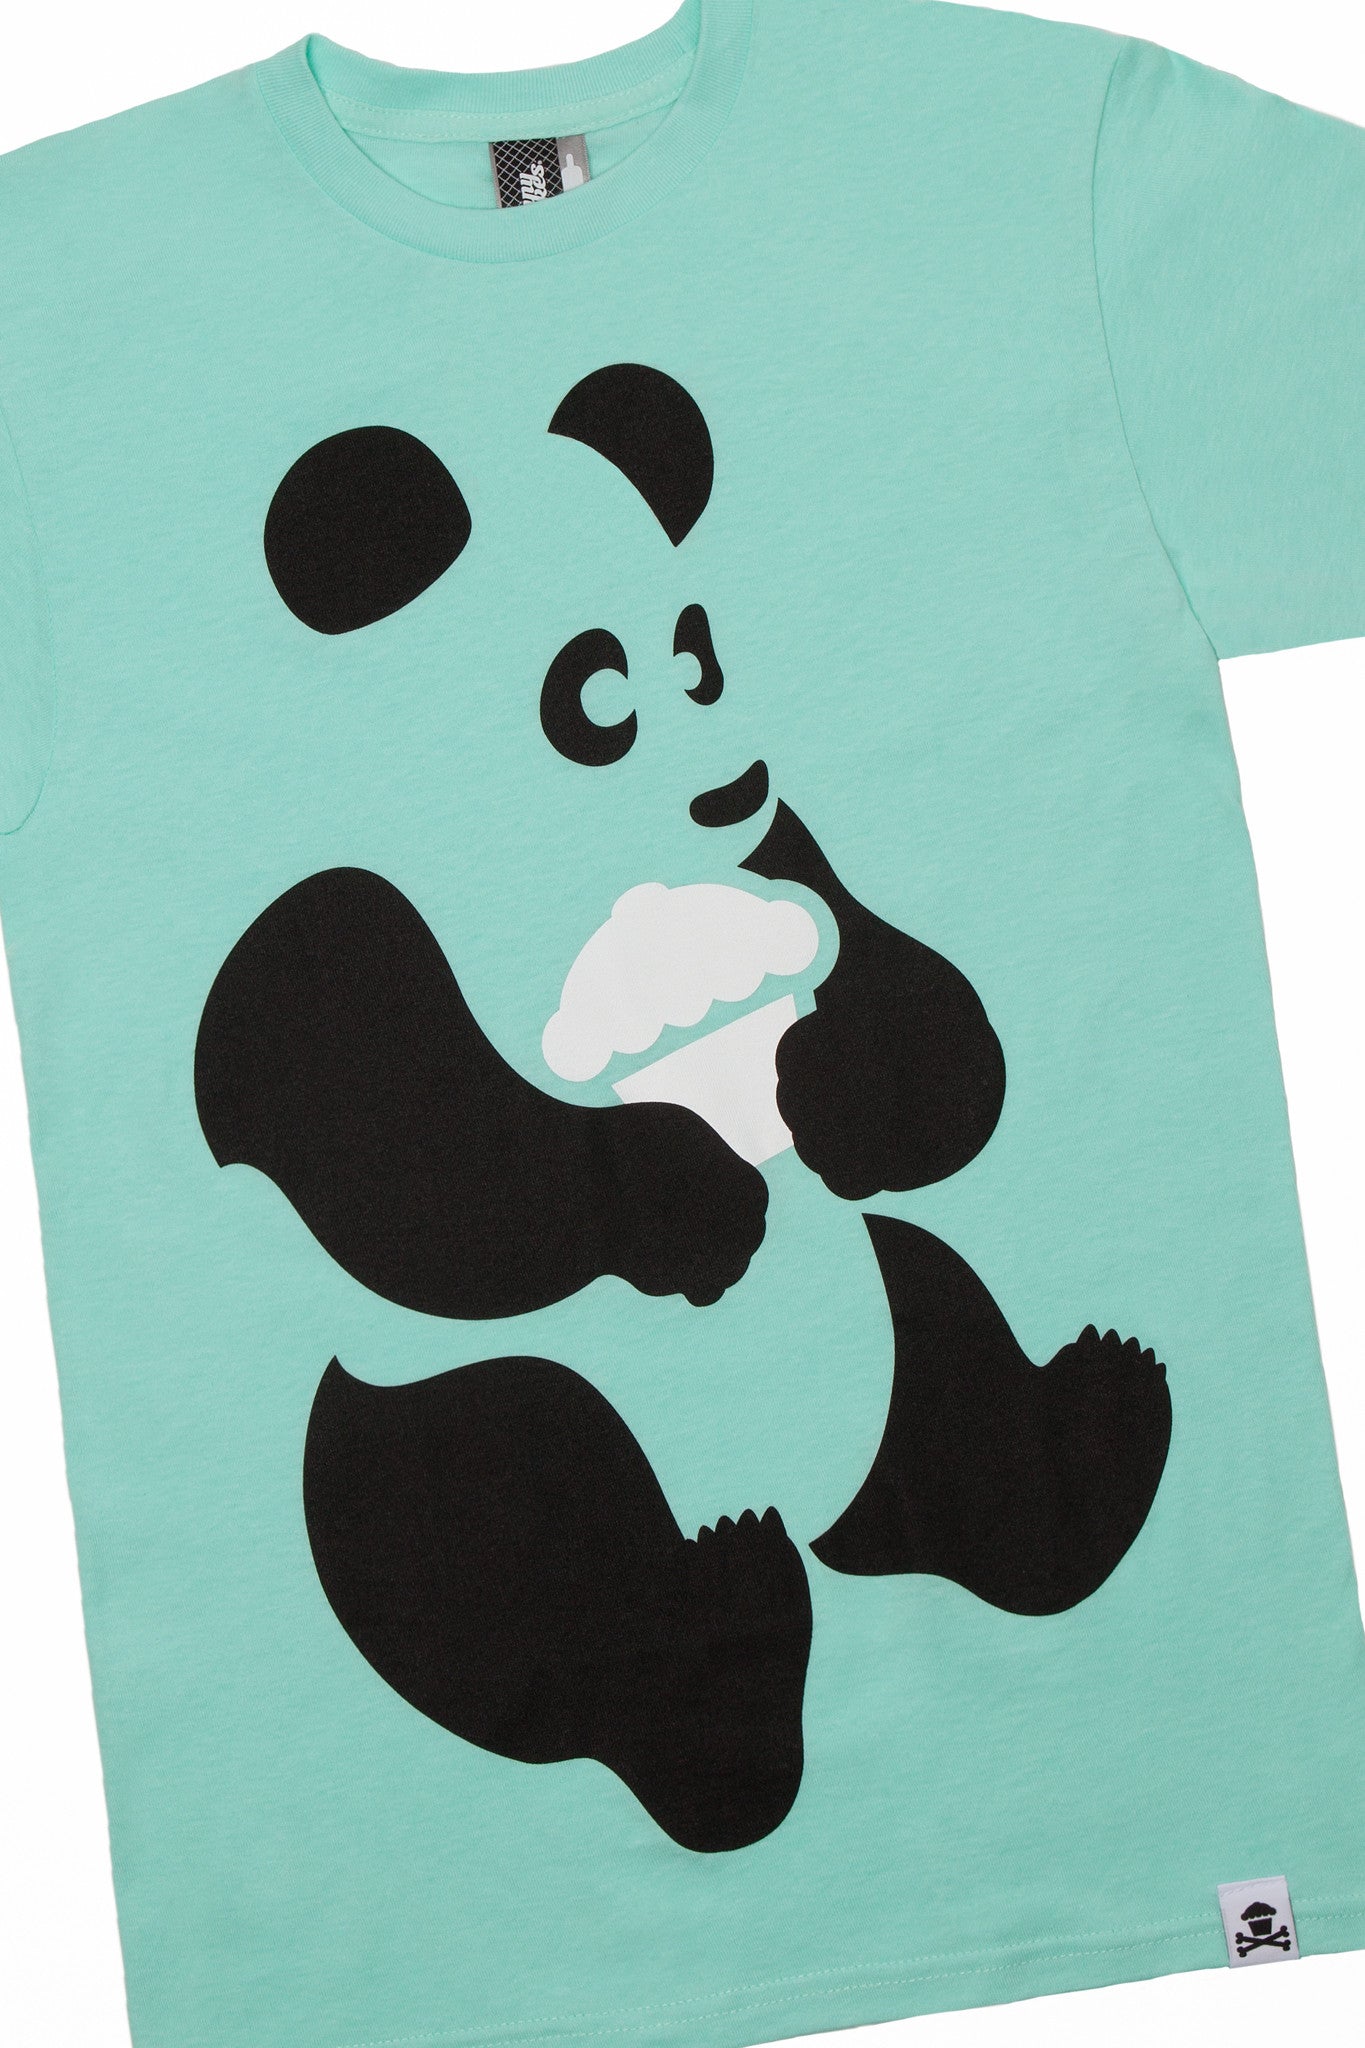 JC Vault - Adult Medium - Panda (Mint)